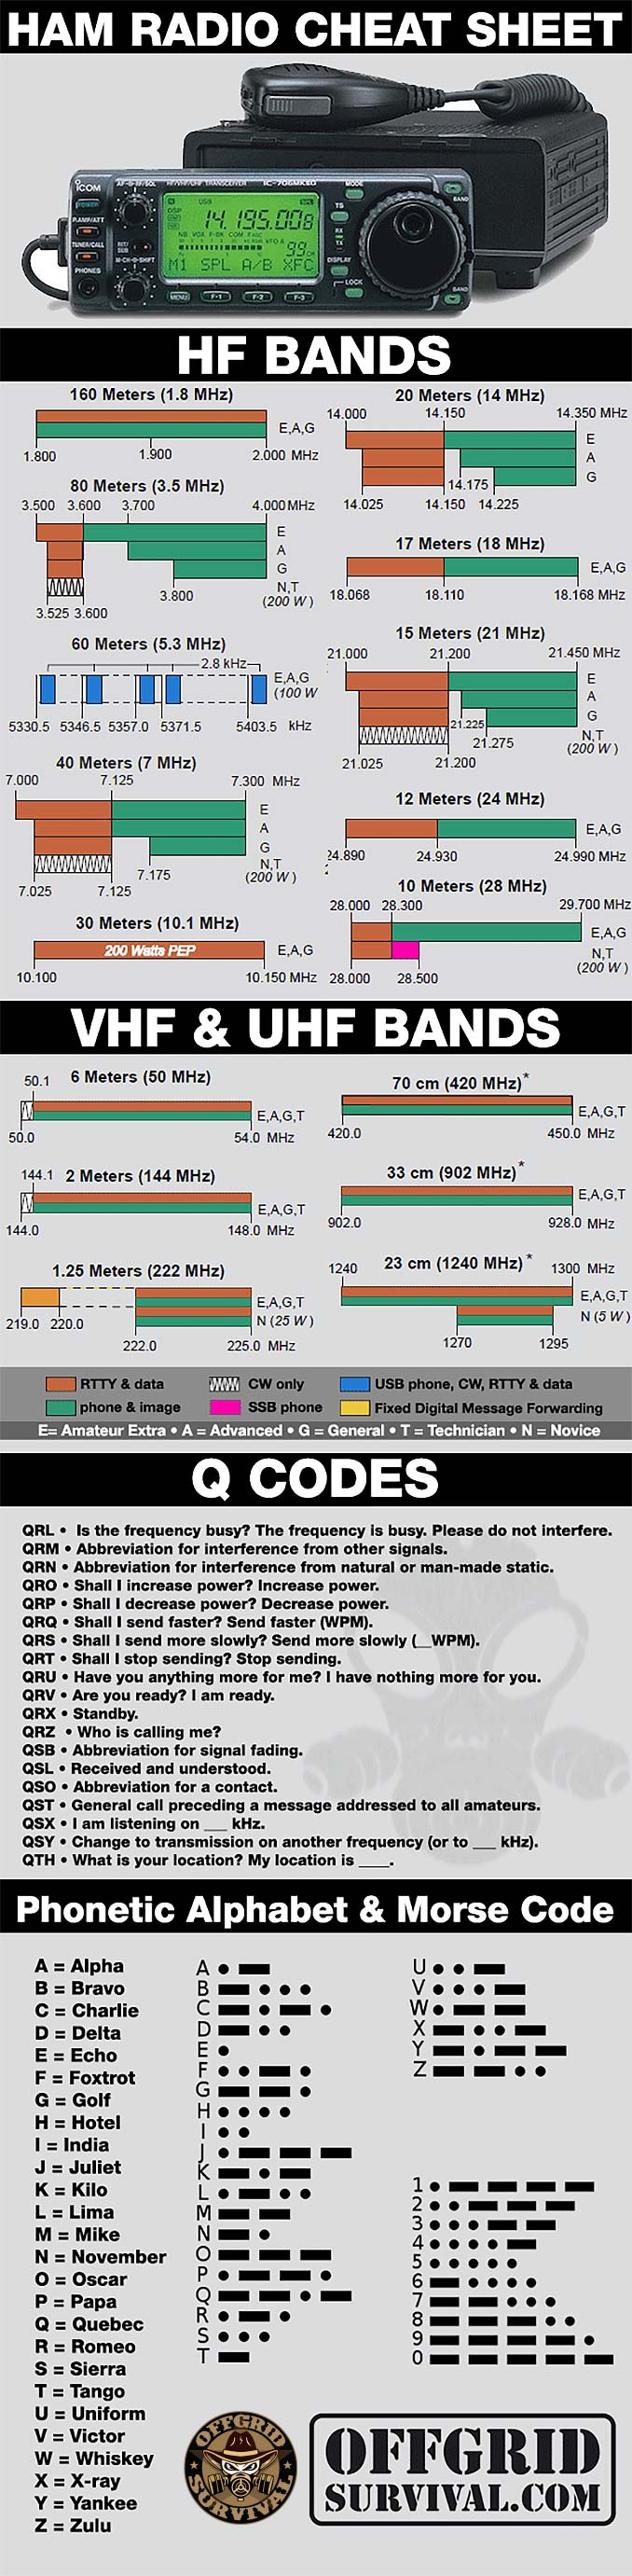 Ham Radio Cheat Sheet: Bands, Q Codes, and Morse Code